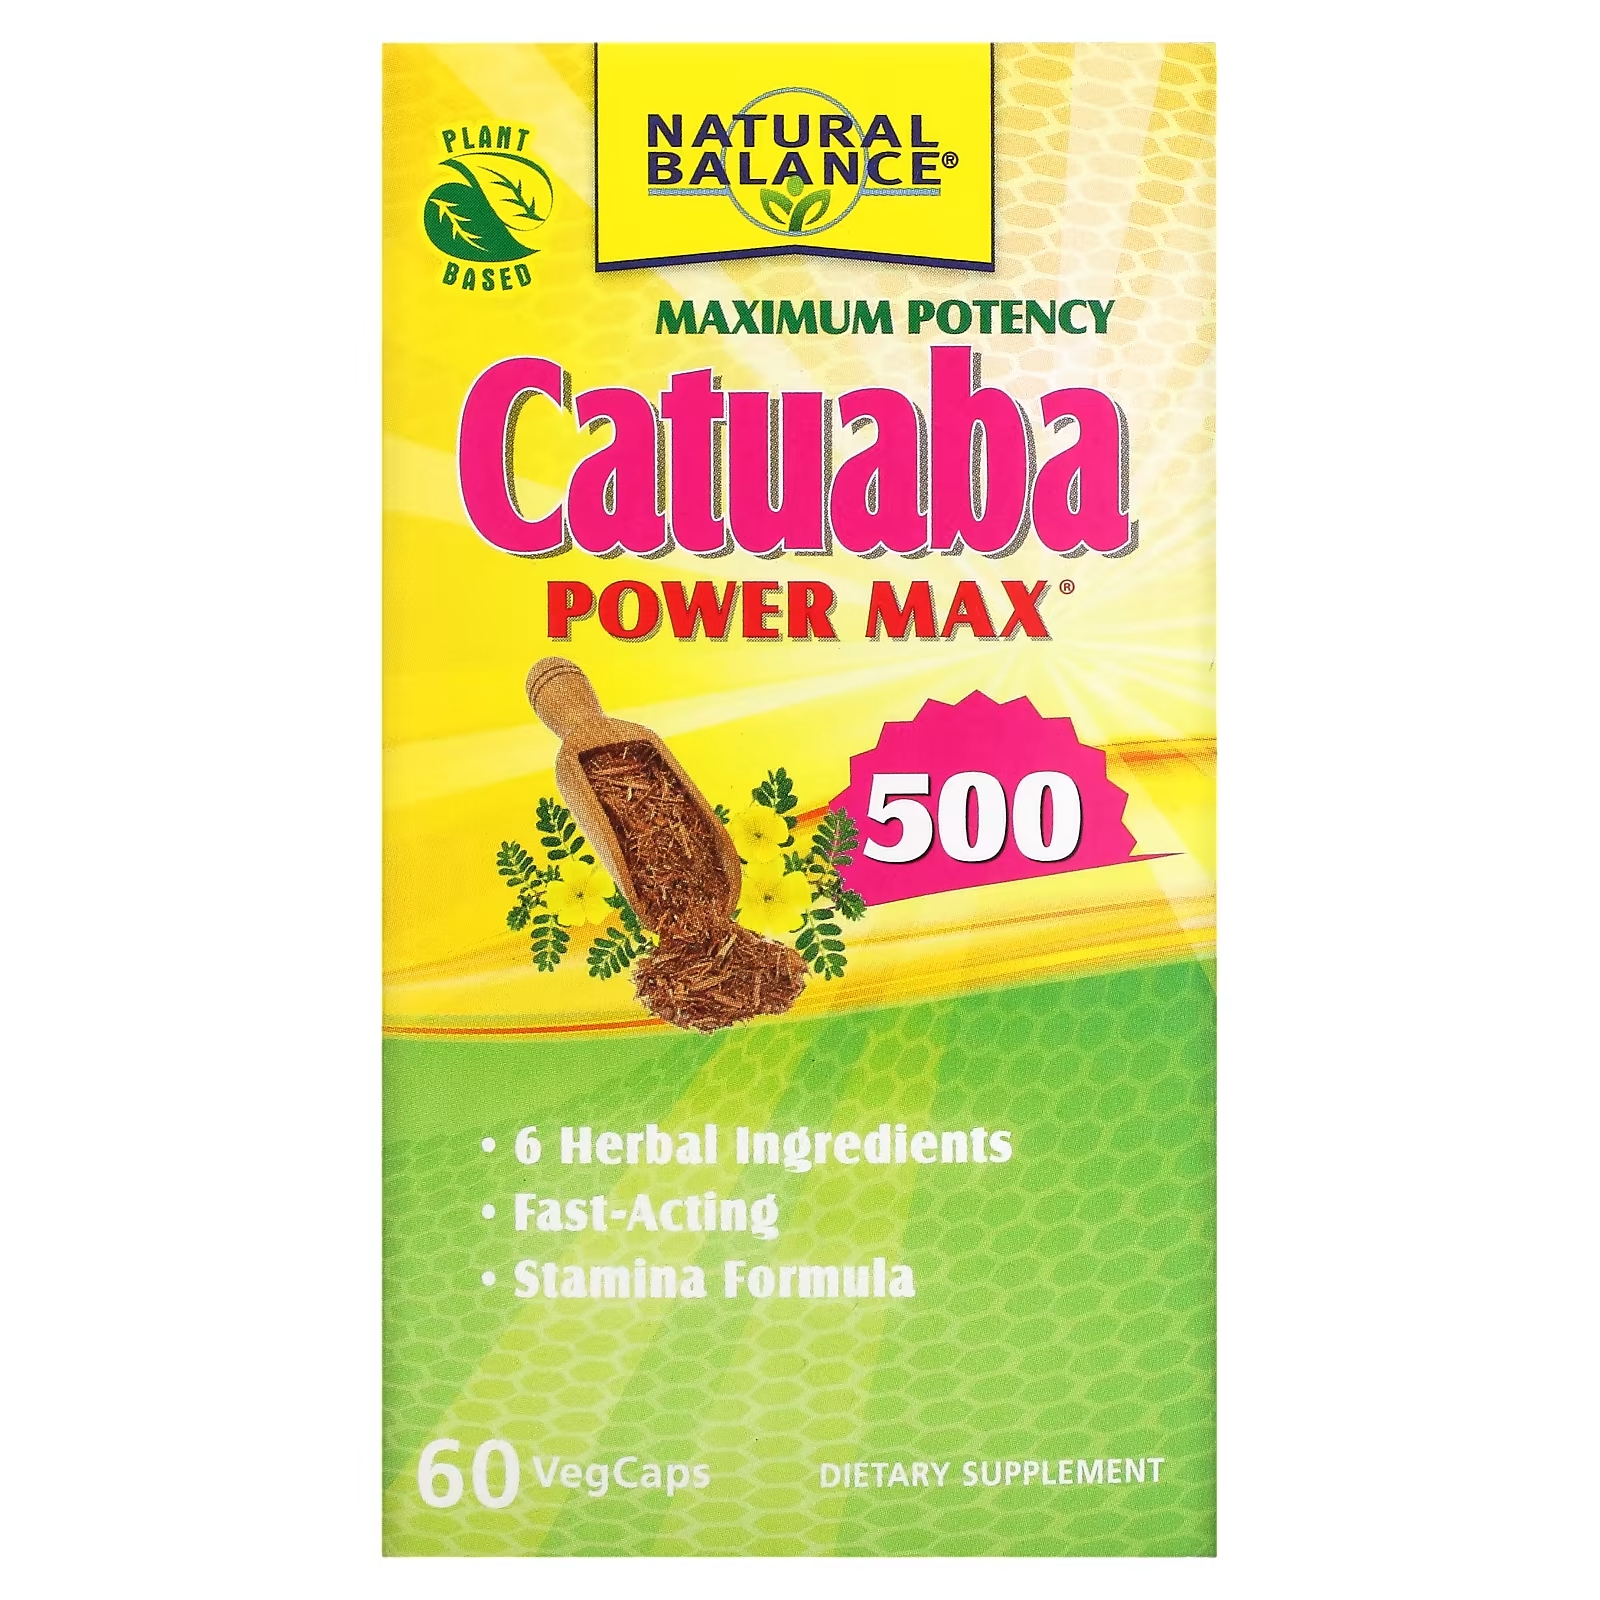 Natural Balance Катуаба Power Max 500 максимальная эффективность, 60 растительных капсул колон кленц natural balance 60 растительных капсул